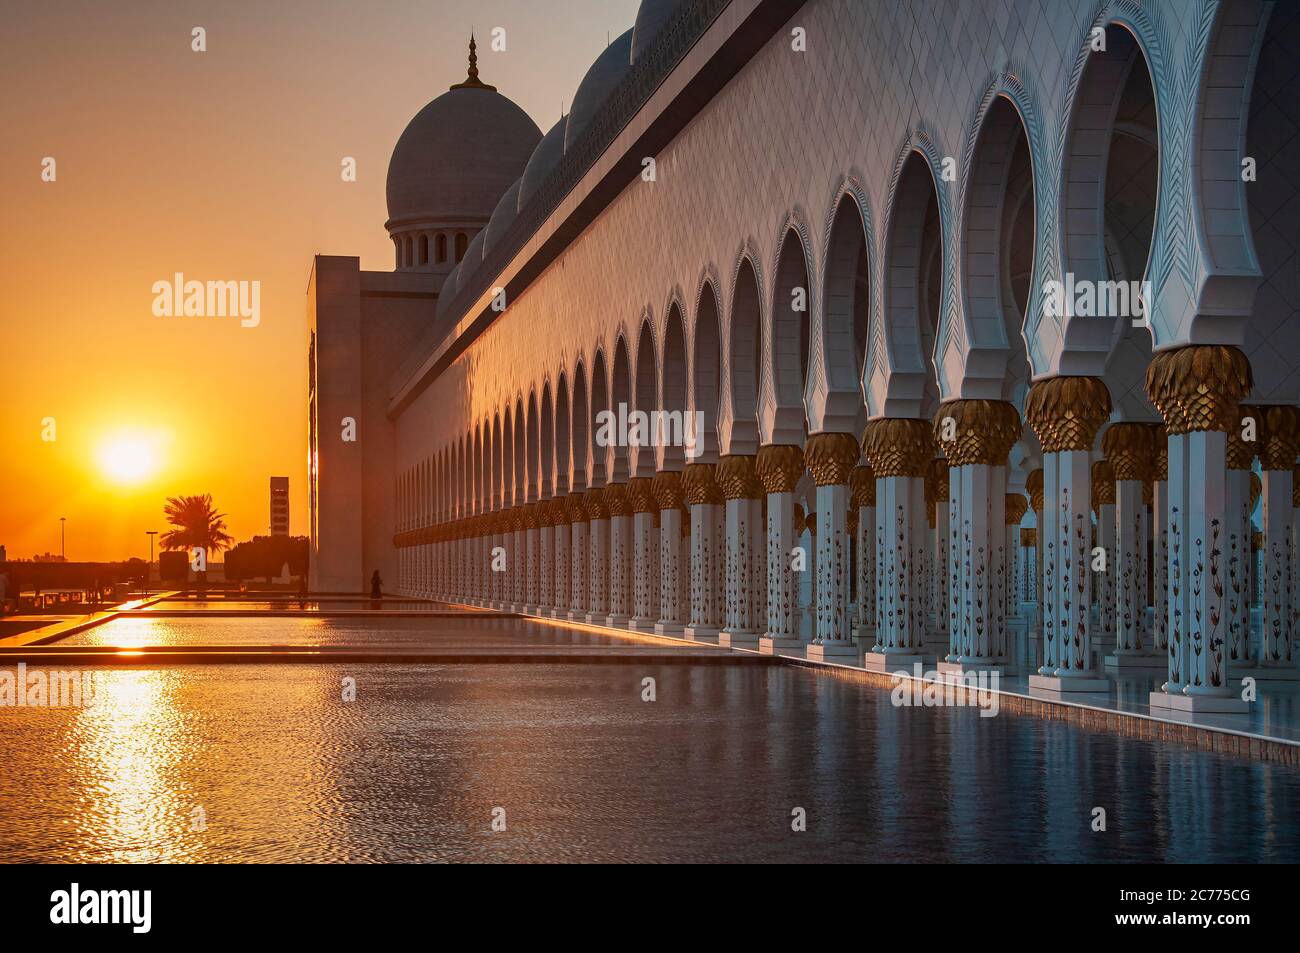 La Grande Mosquée de Sheikh Zayed au coucher du soleil, Abu Dhabi, Émirats arabes unis, Moyen Orient Banque D'Images